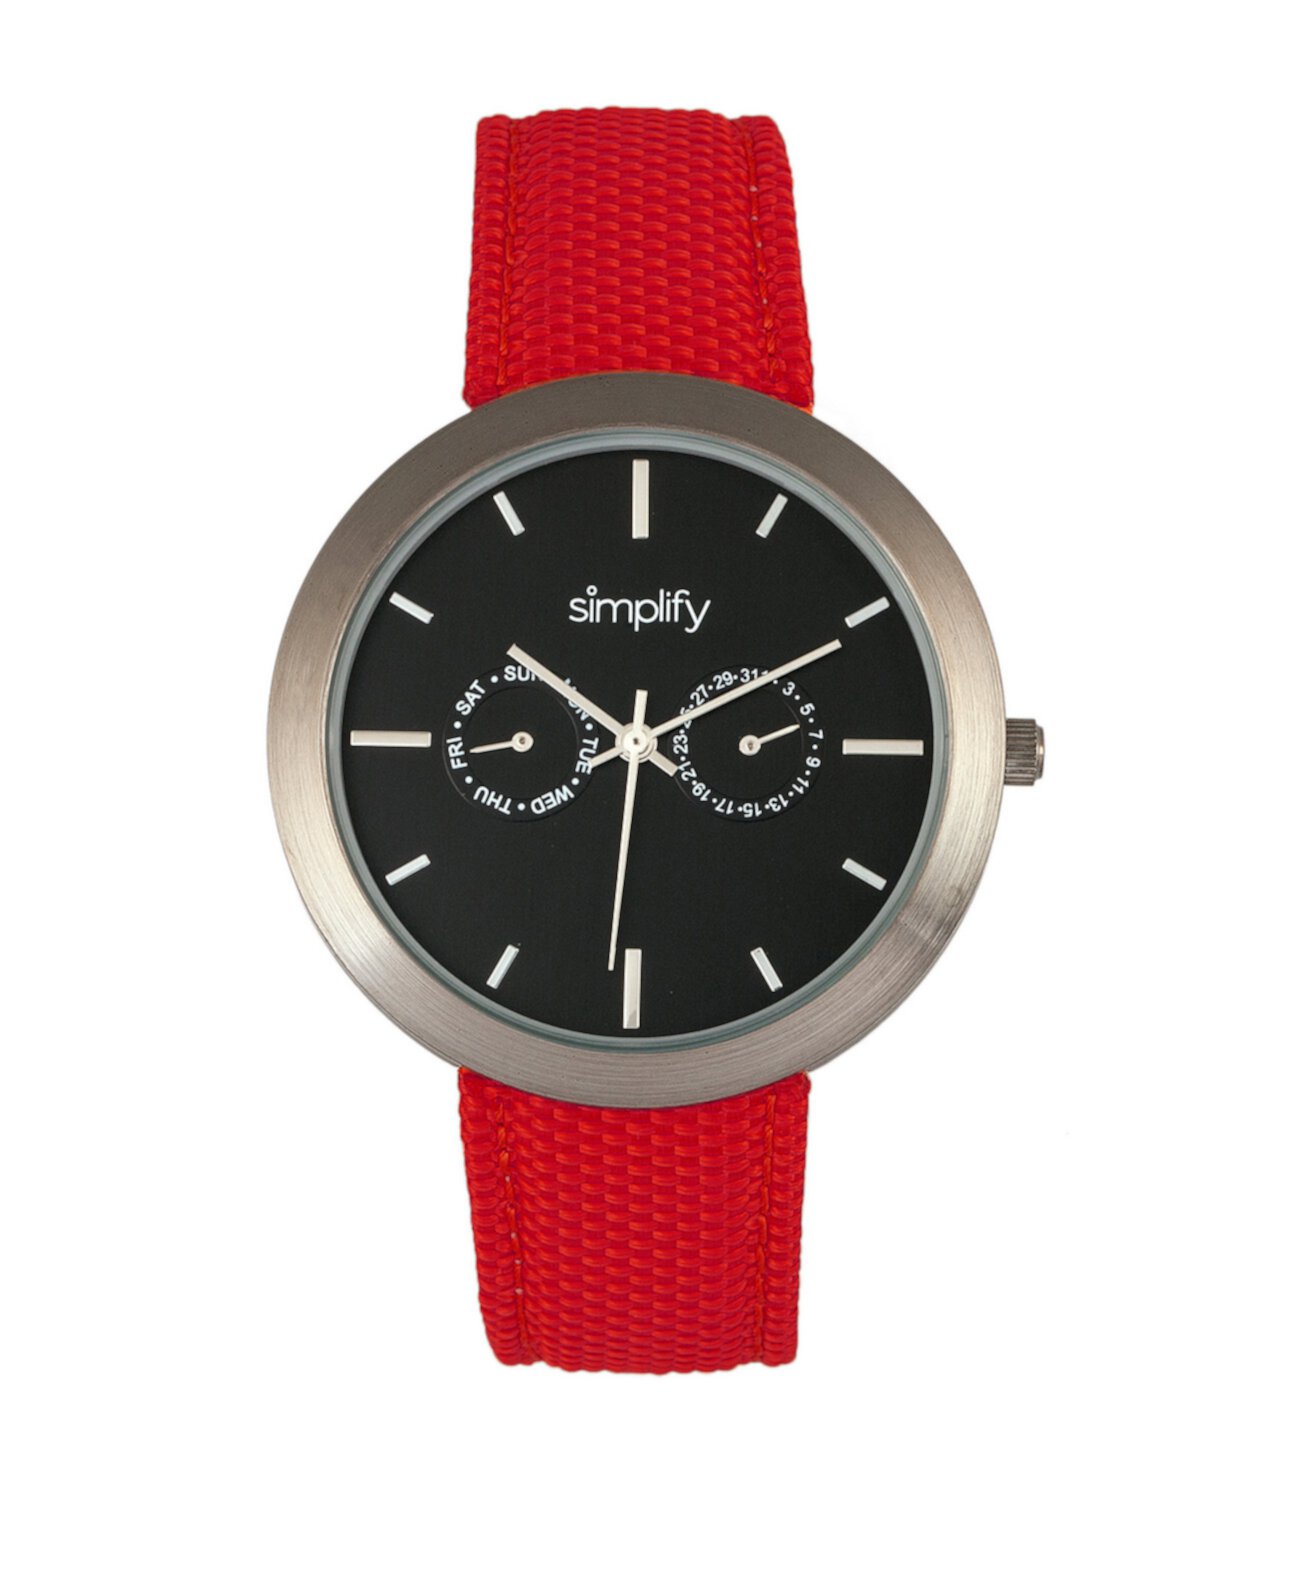 Кварцевые часы с черным циферблатом 6100, красный ремешок из полиуретана с покрытием из холста, 43 мм Simplify